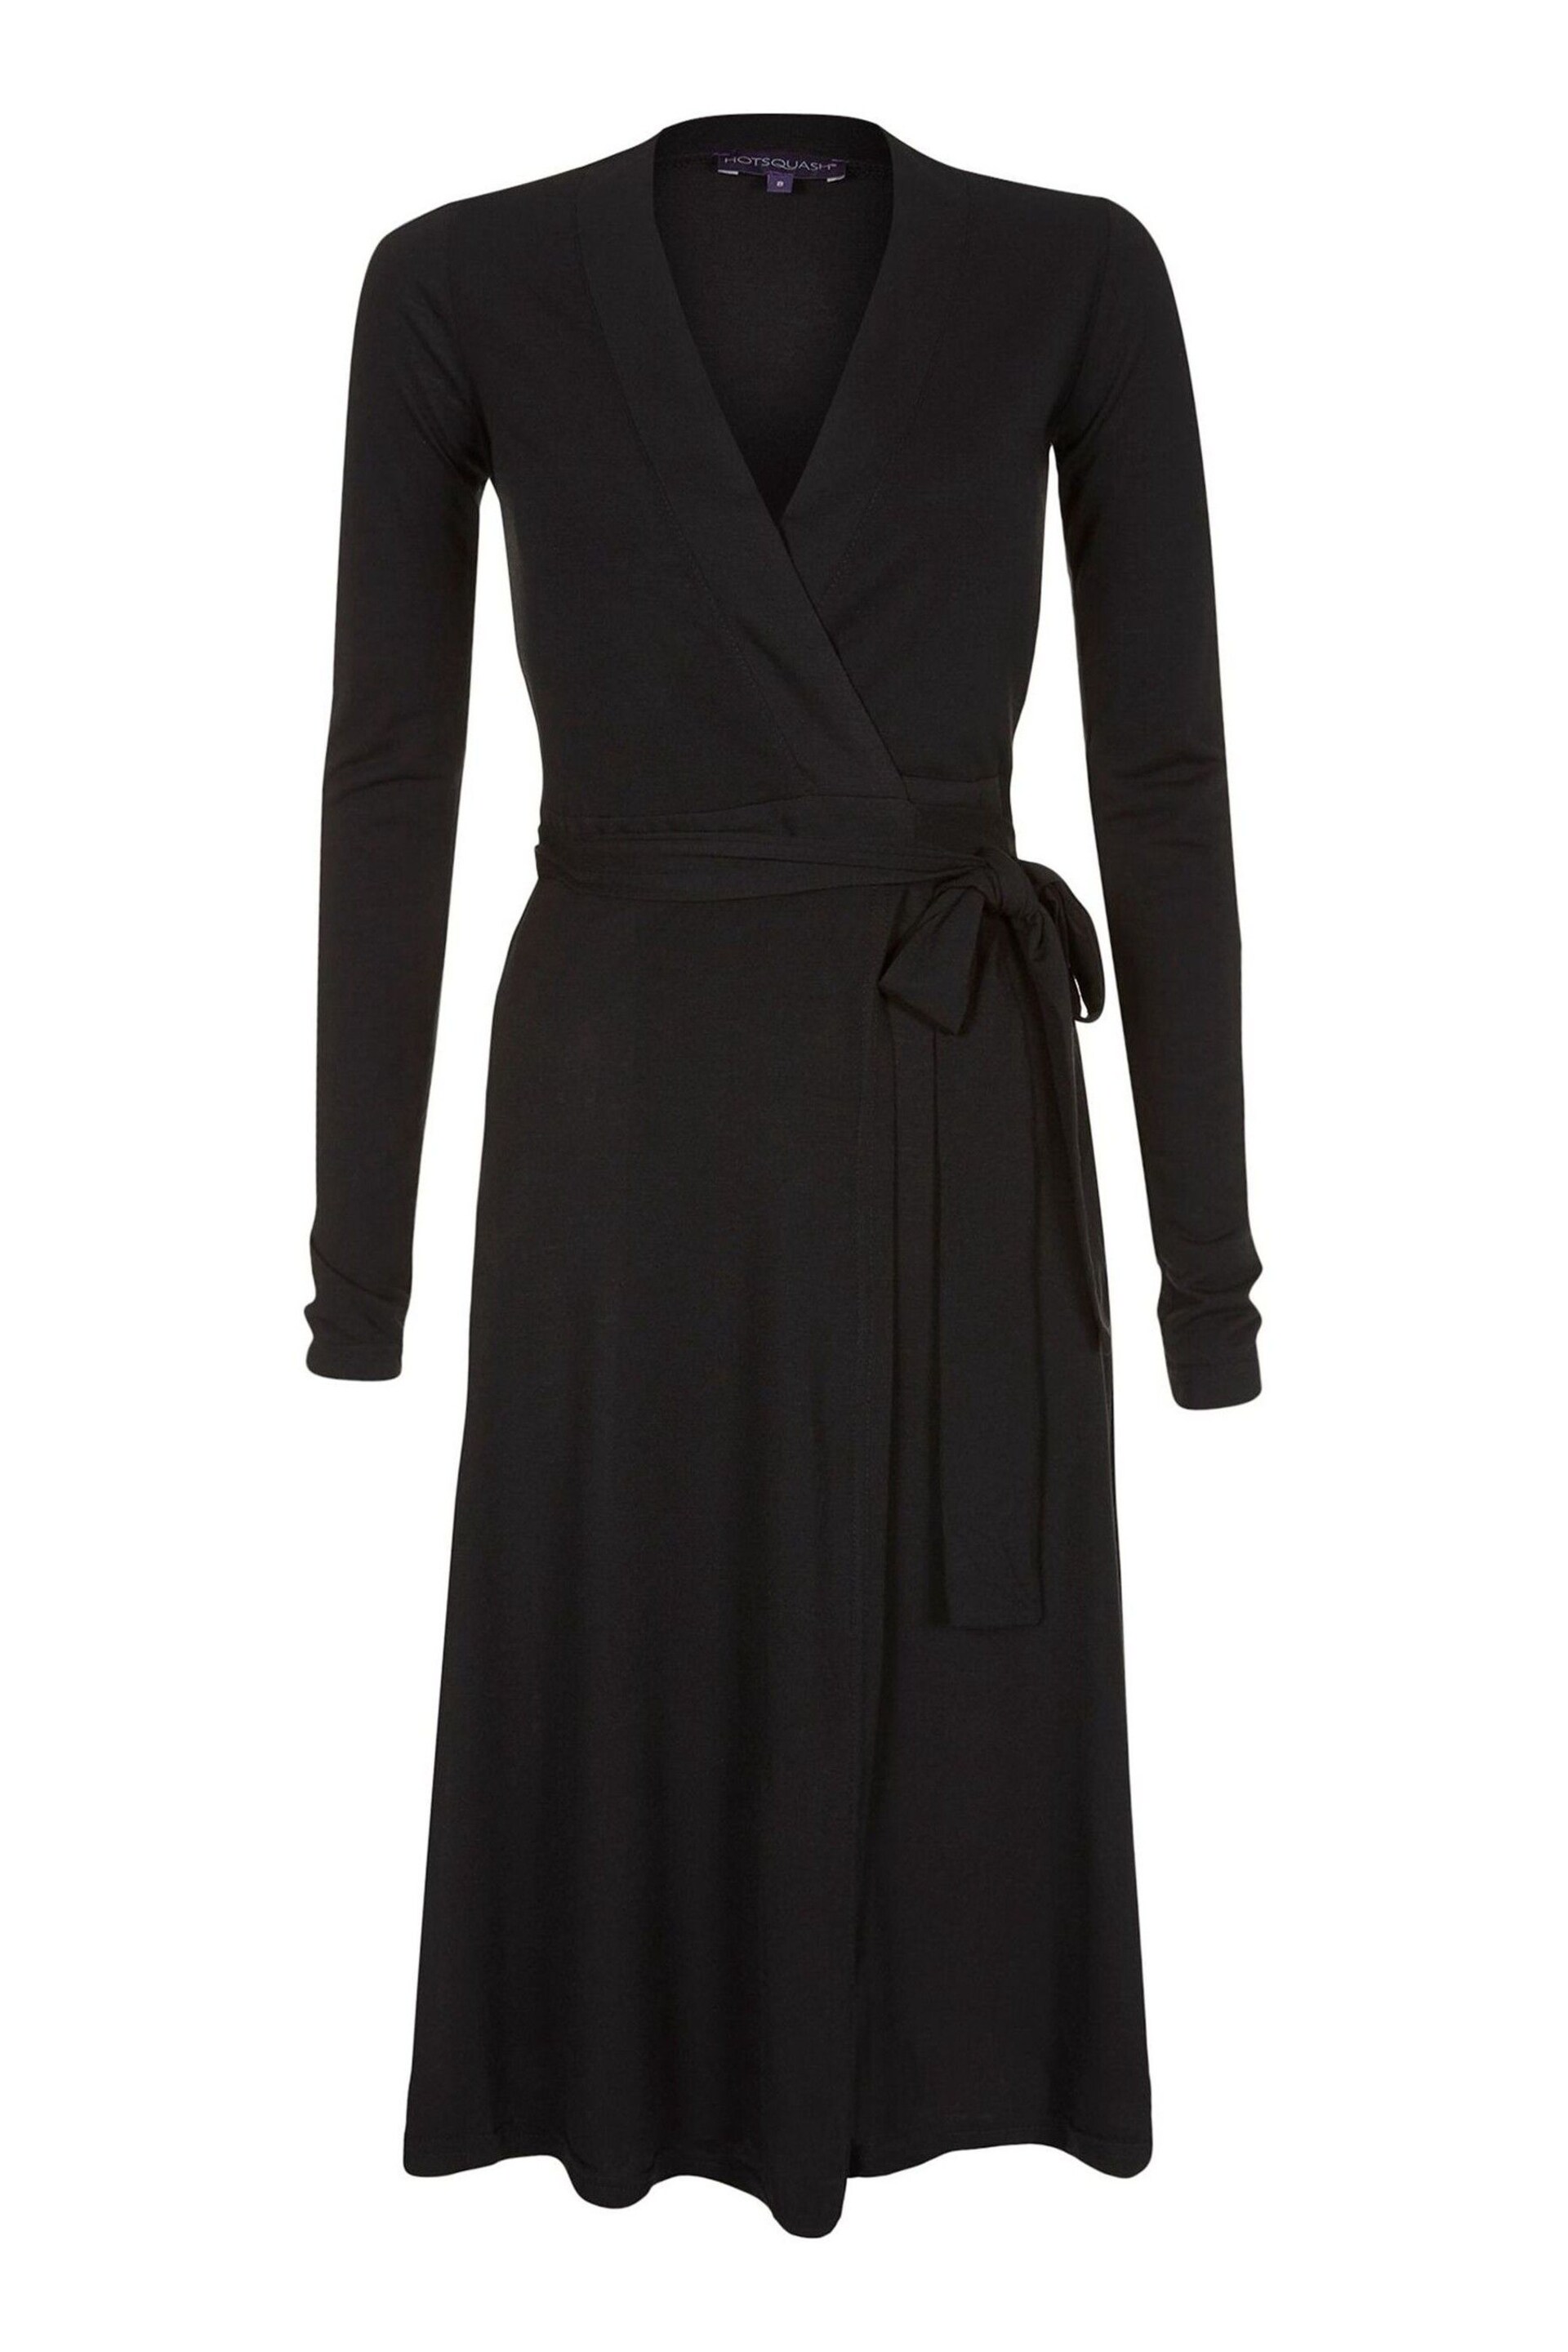 HotSquash Black The Wrap Dress - Image 3 of 3